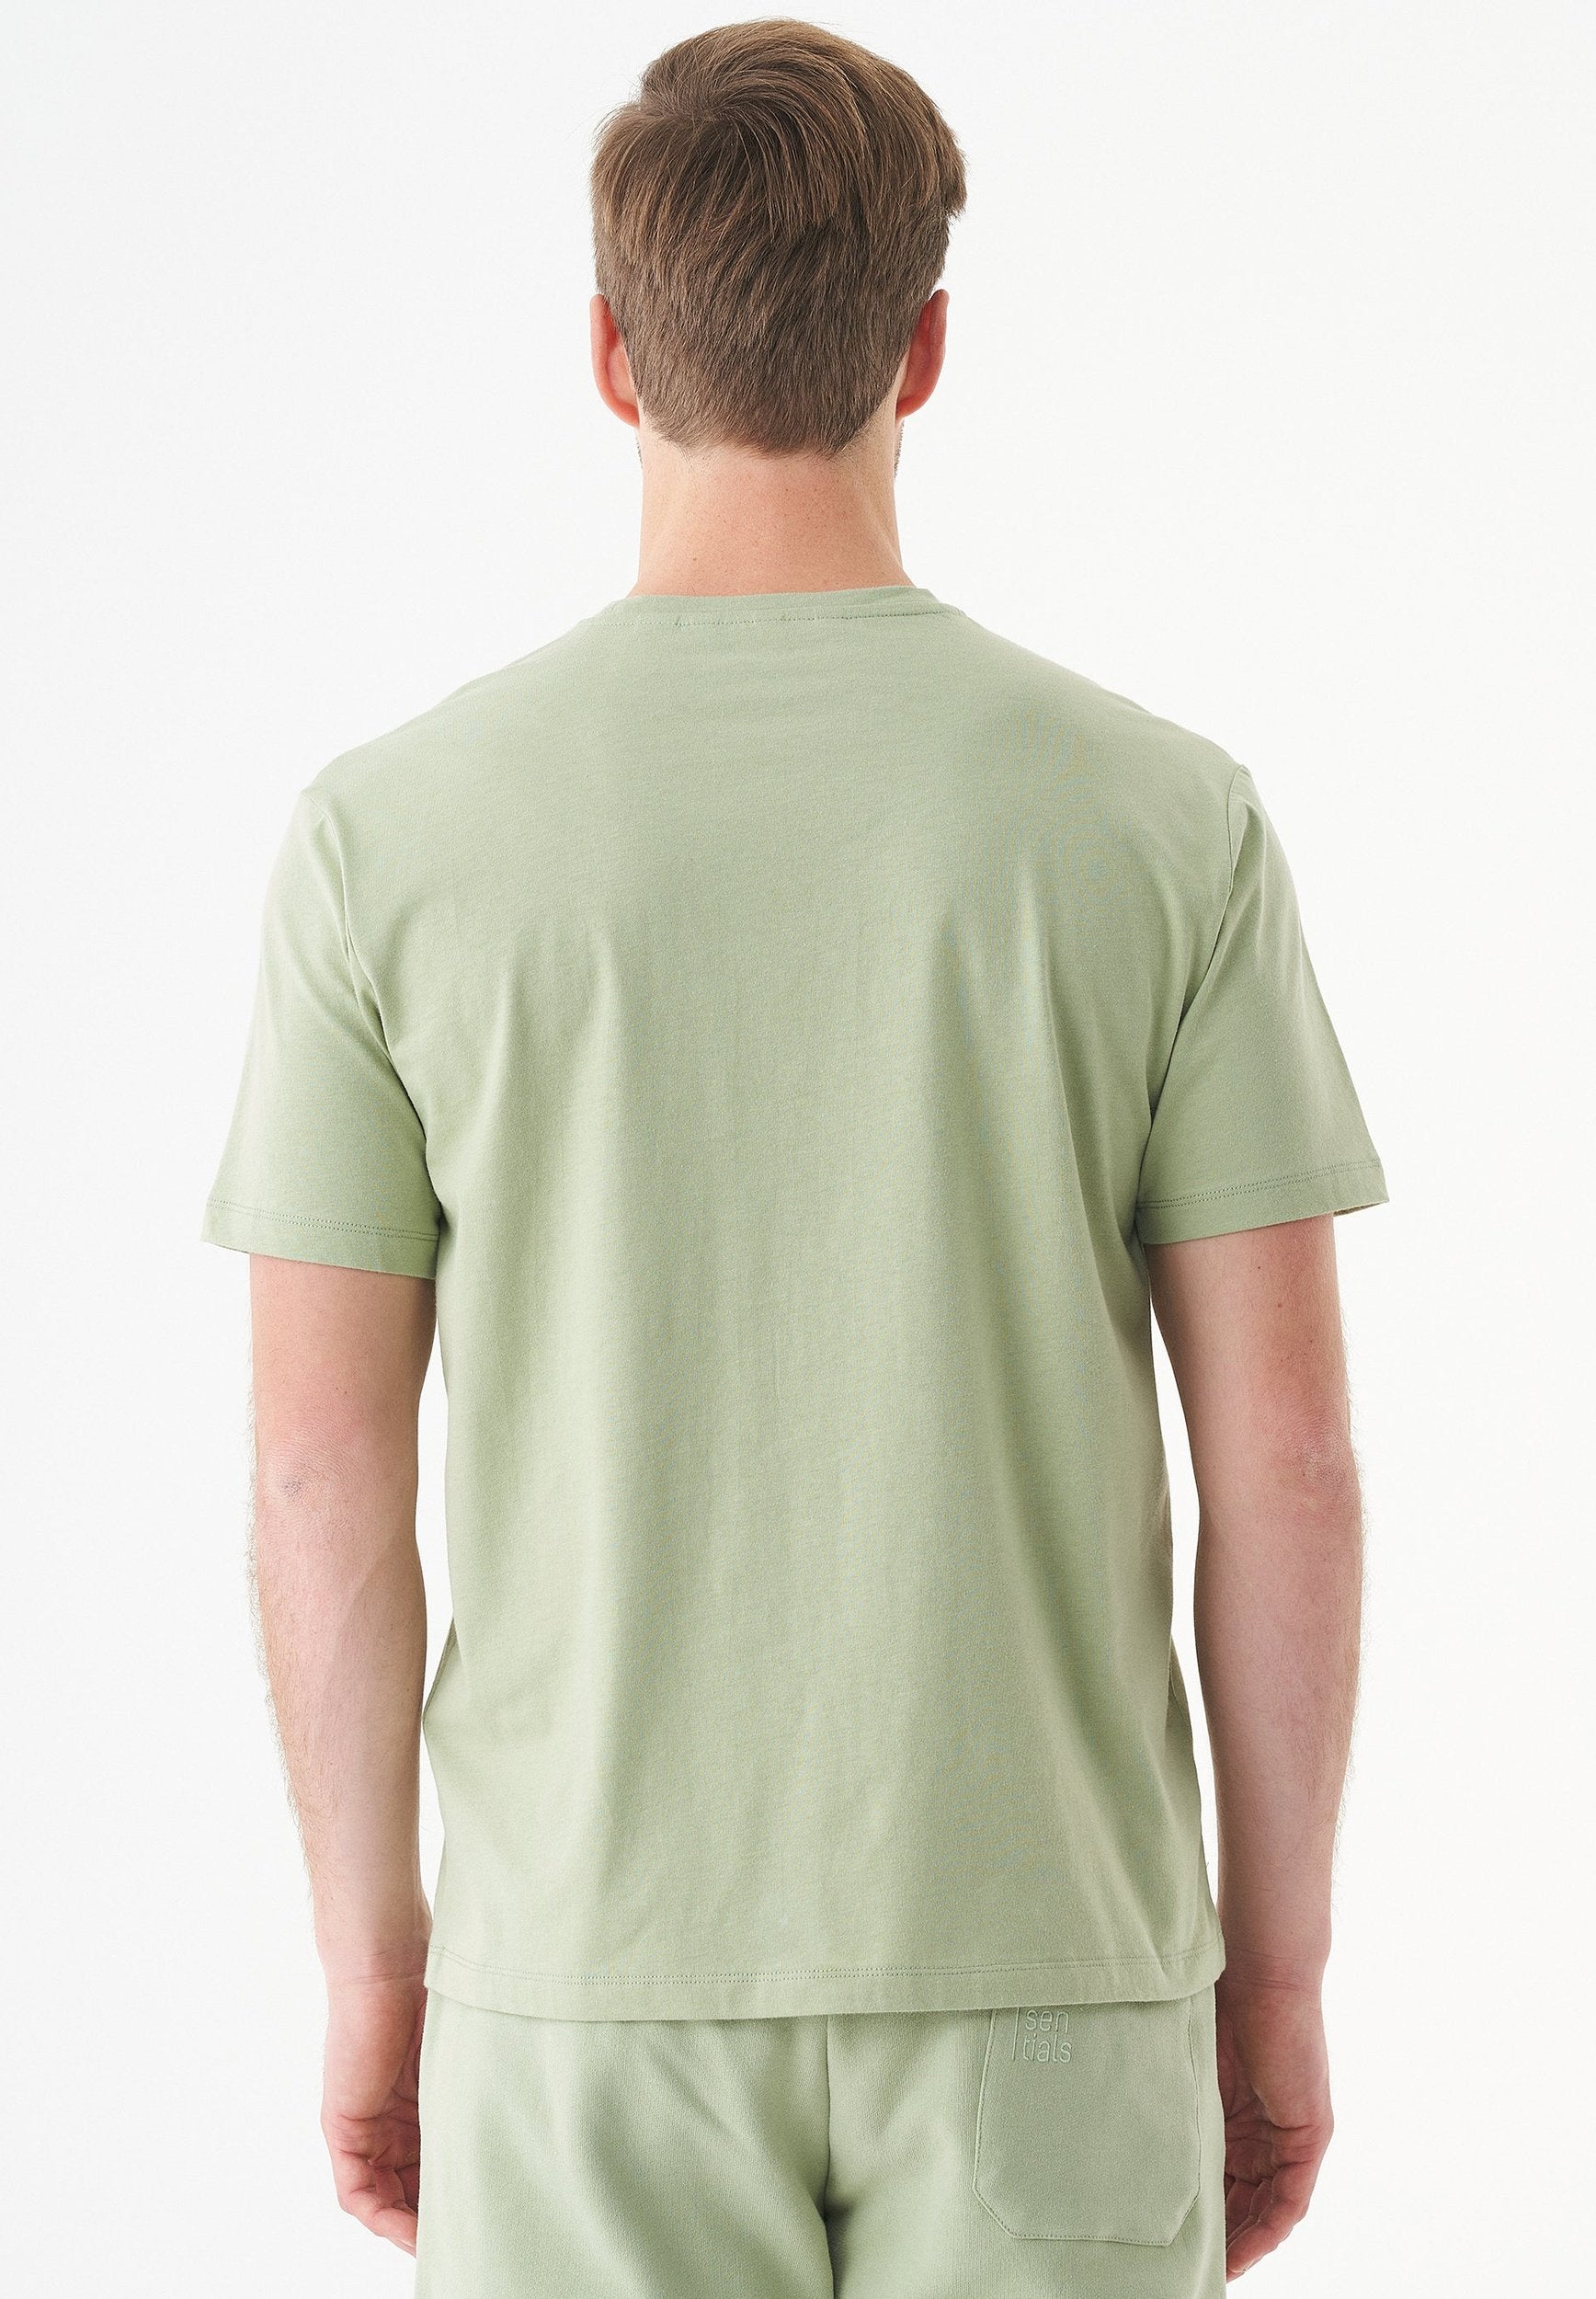 TILLO- Unisex Basic T-Shirt aus Bio-Baumwolle